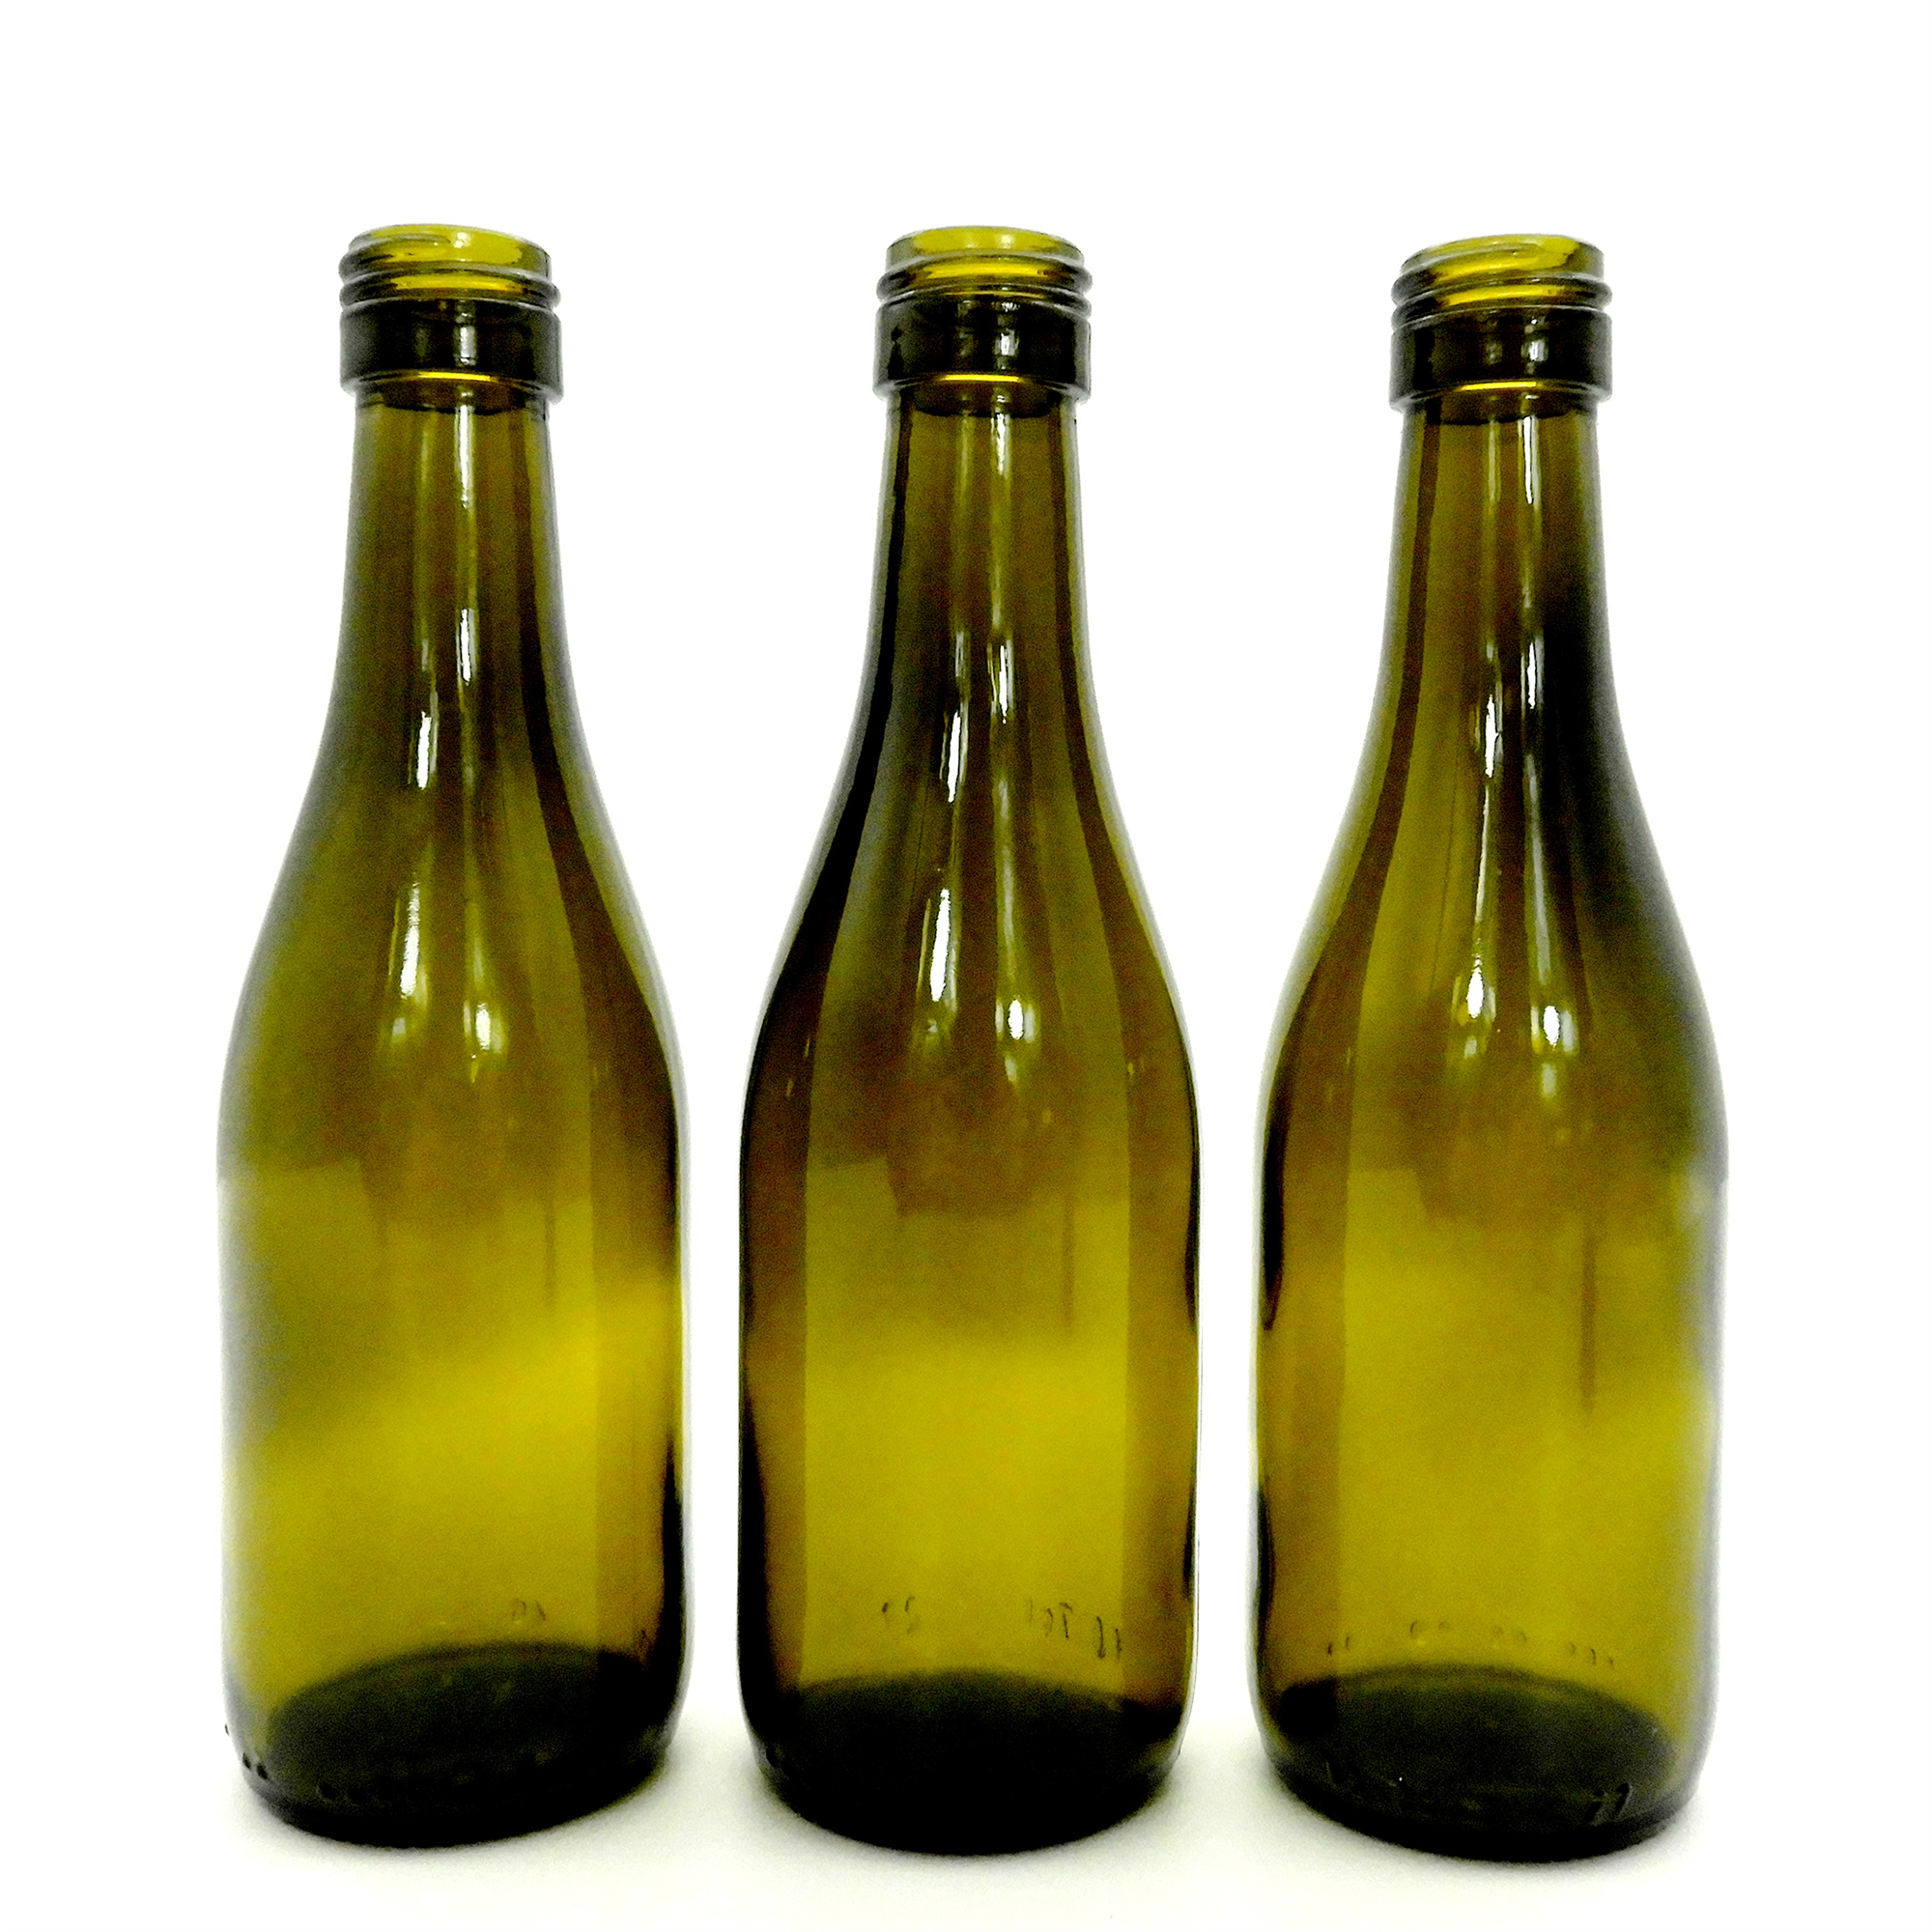 187ml Burgundy Wine Bottle